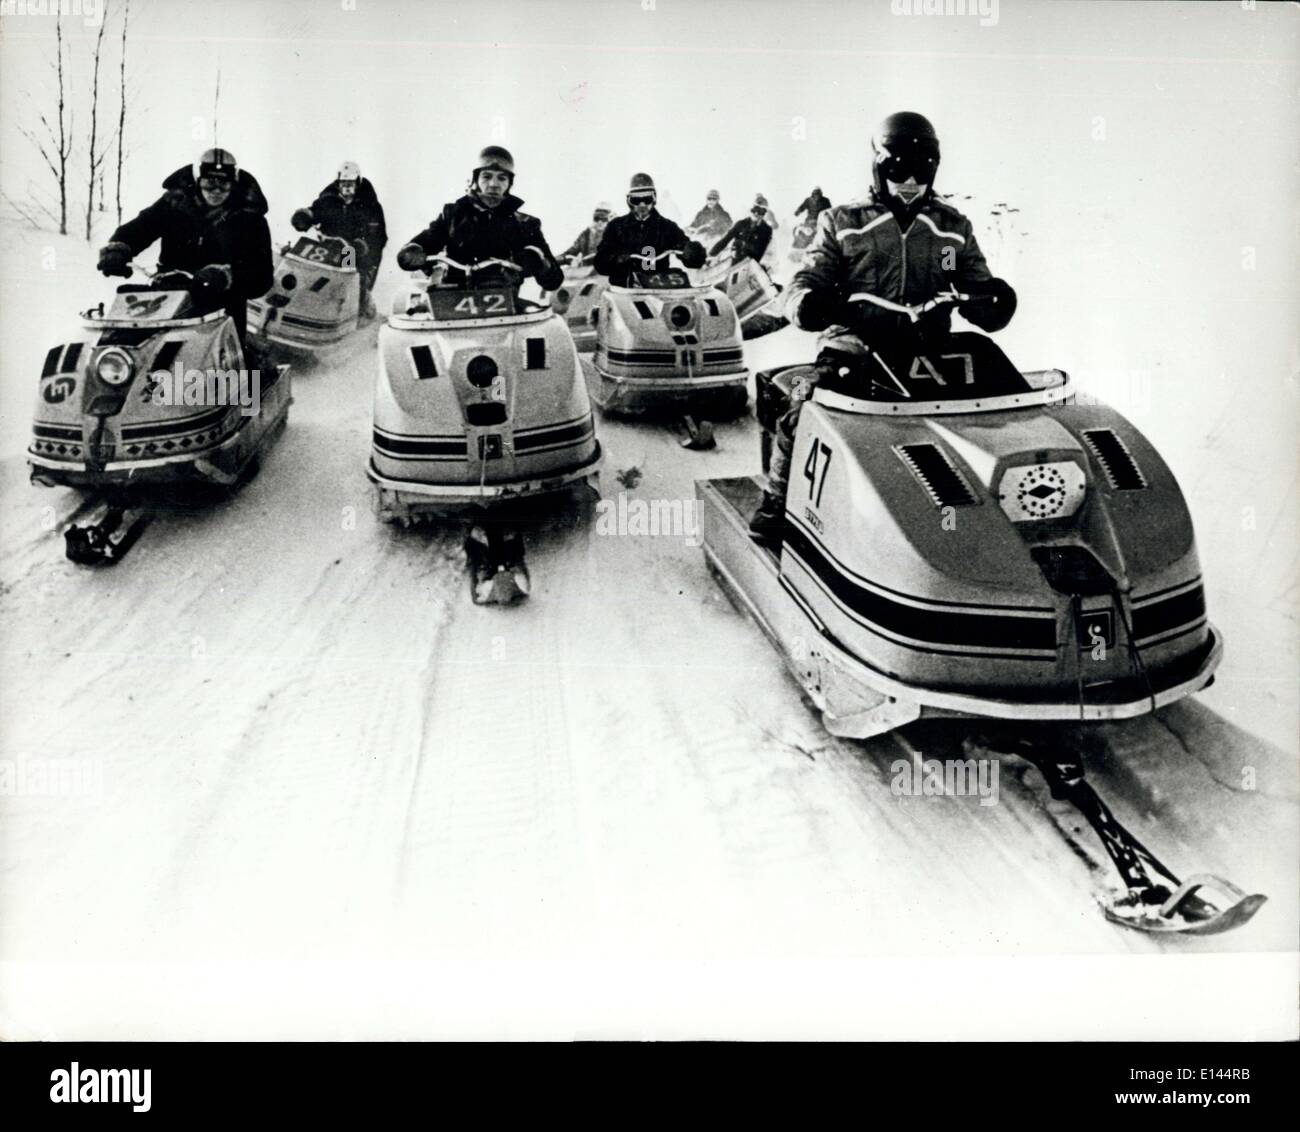 Abril 04, 2012 - Grand Prix en el Volga: competidores line-up en su ''Snowcats'' sobre el hielo de la parrilla de salida en las carreras anuales Foto de stock